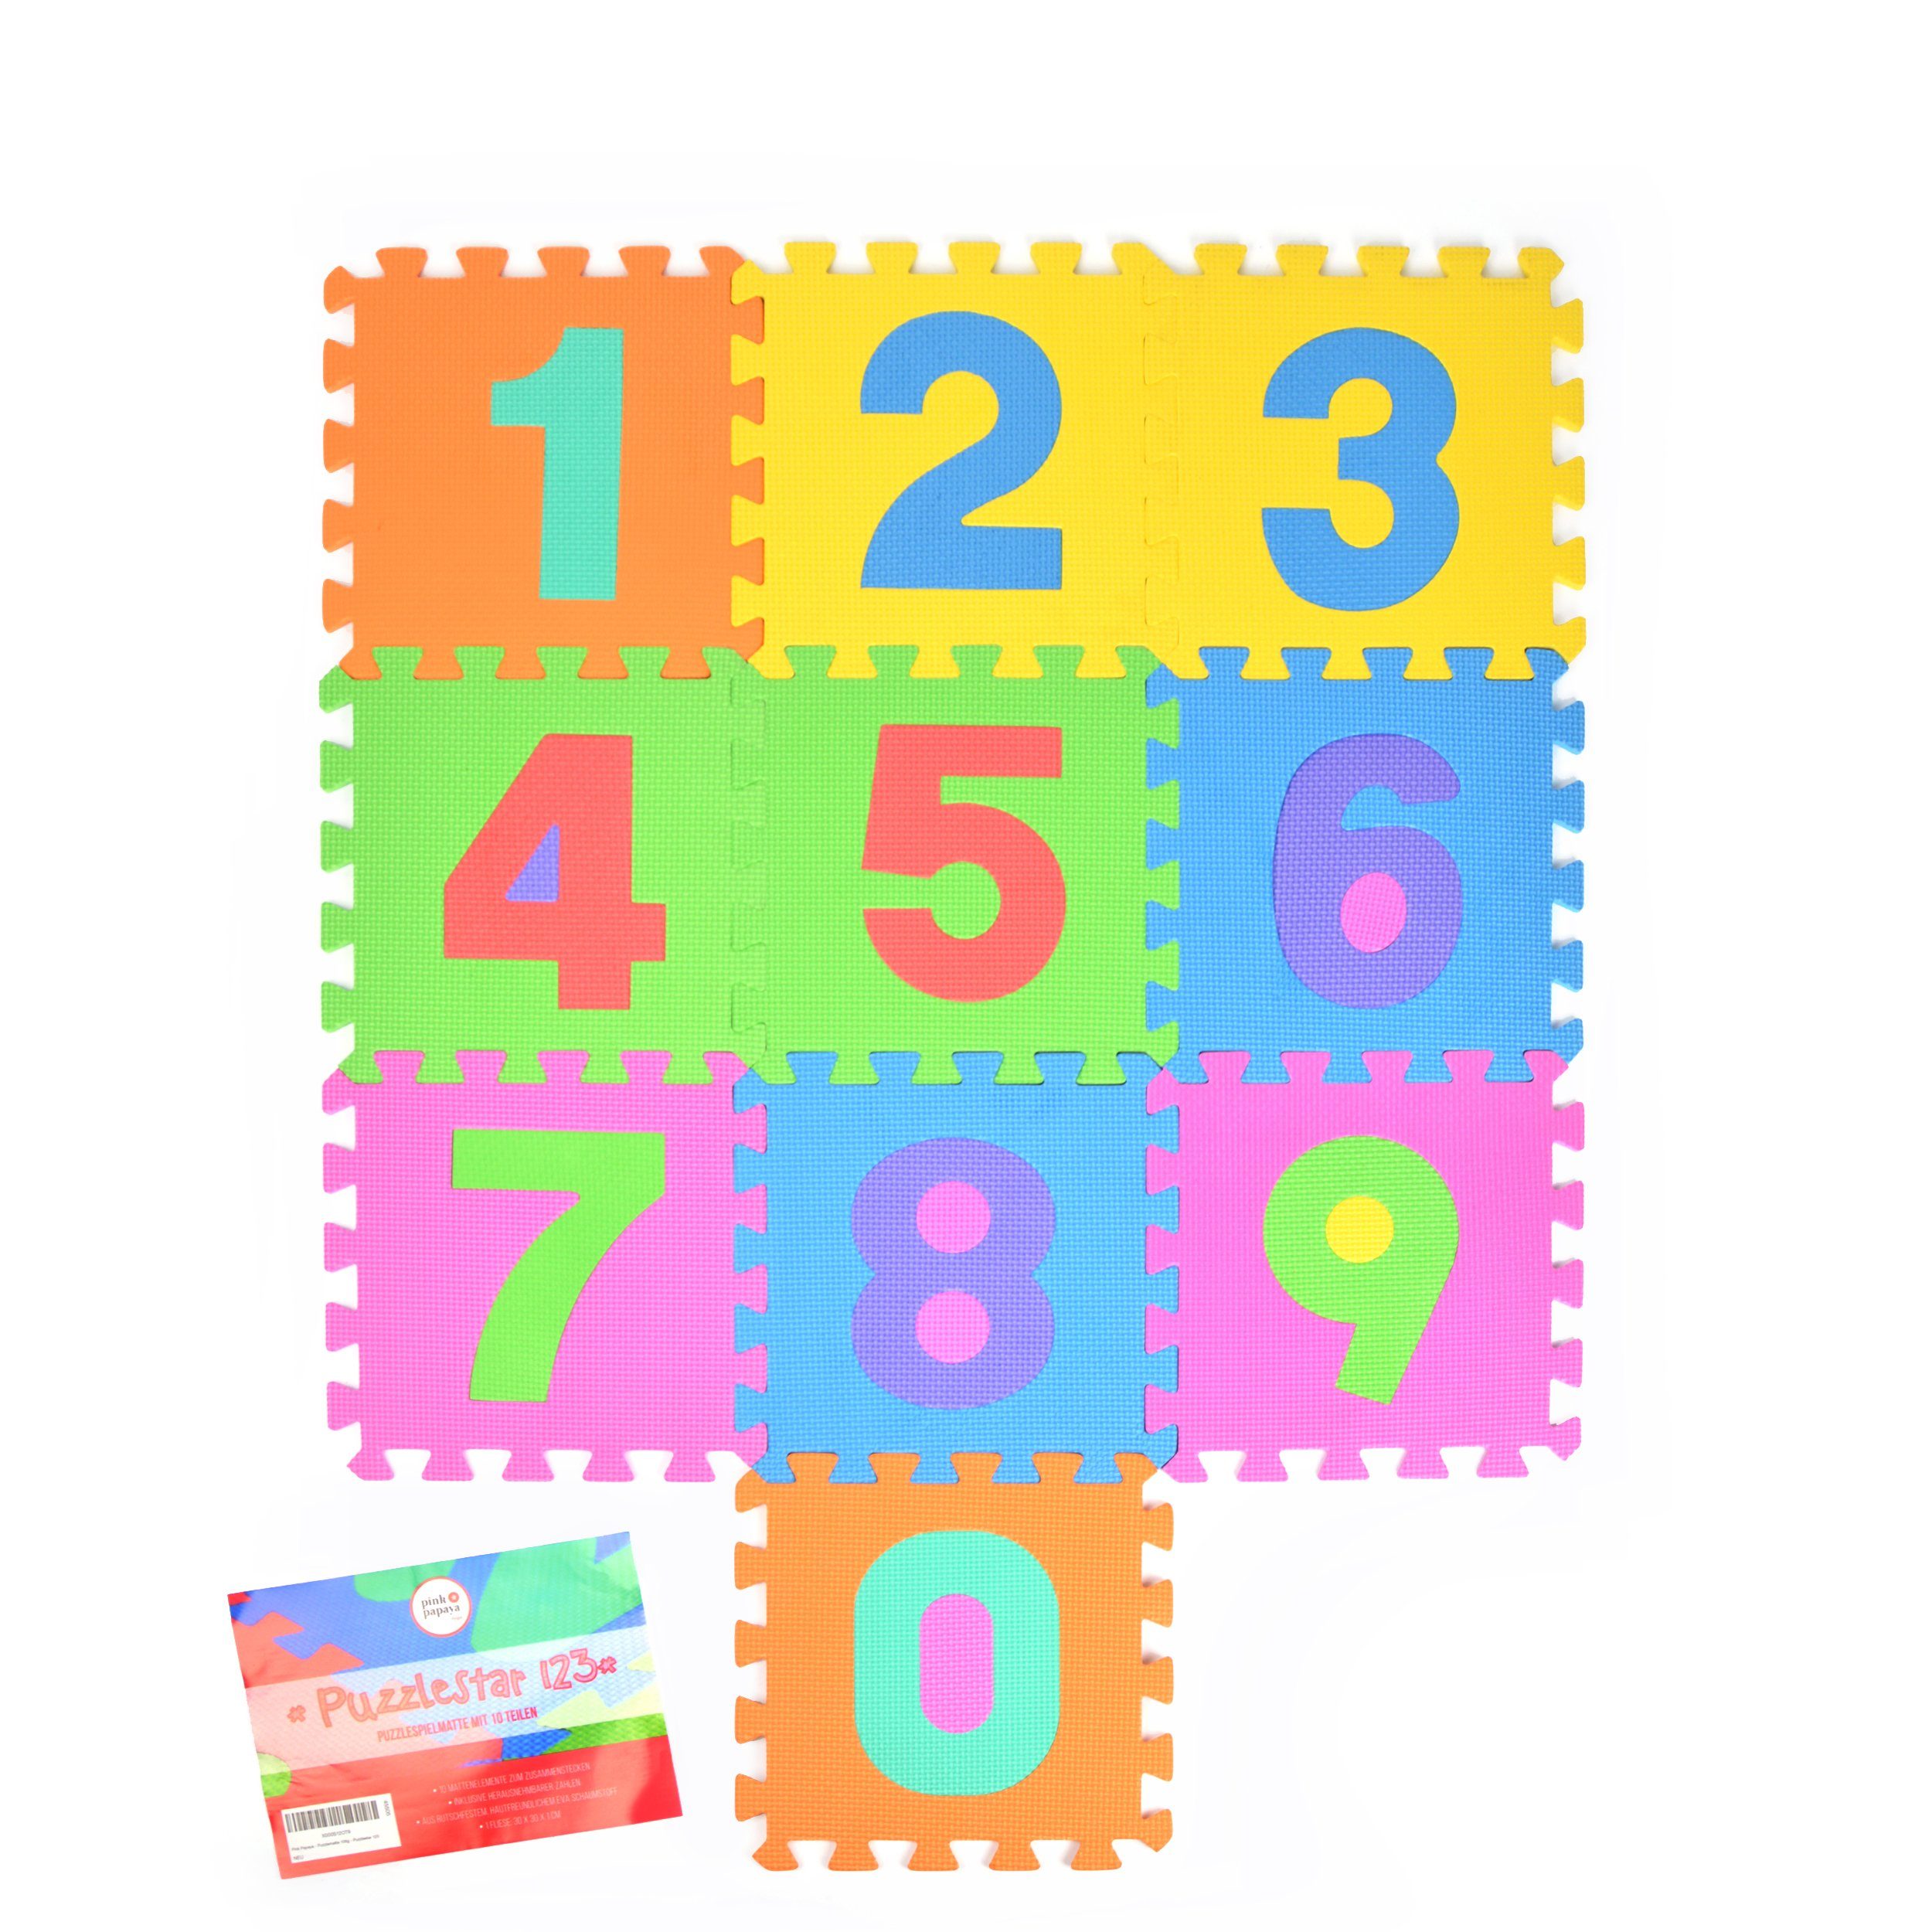 Modelle, Papaya rutschfest und Pink Puzzlematte verschiedene Puzzlematte wärmeisolierend, Puzzlestar hautfreundlich